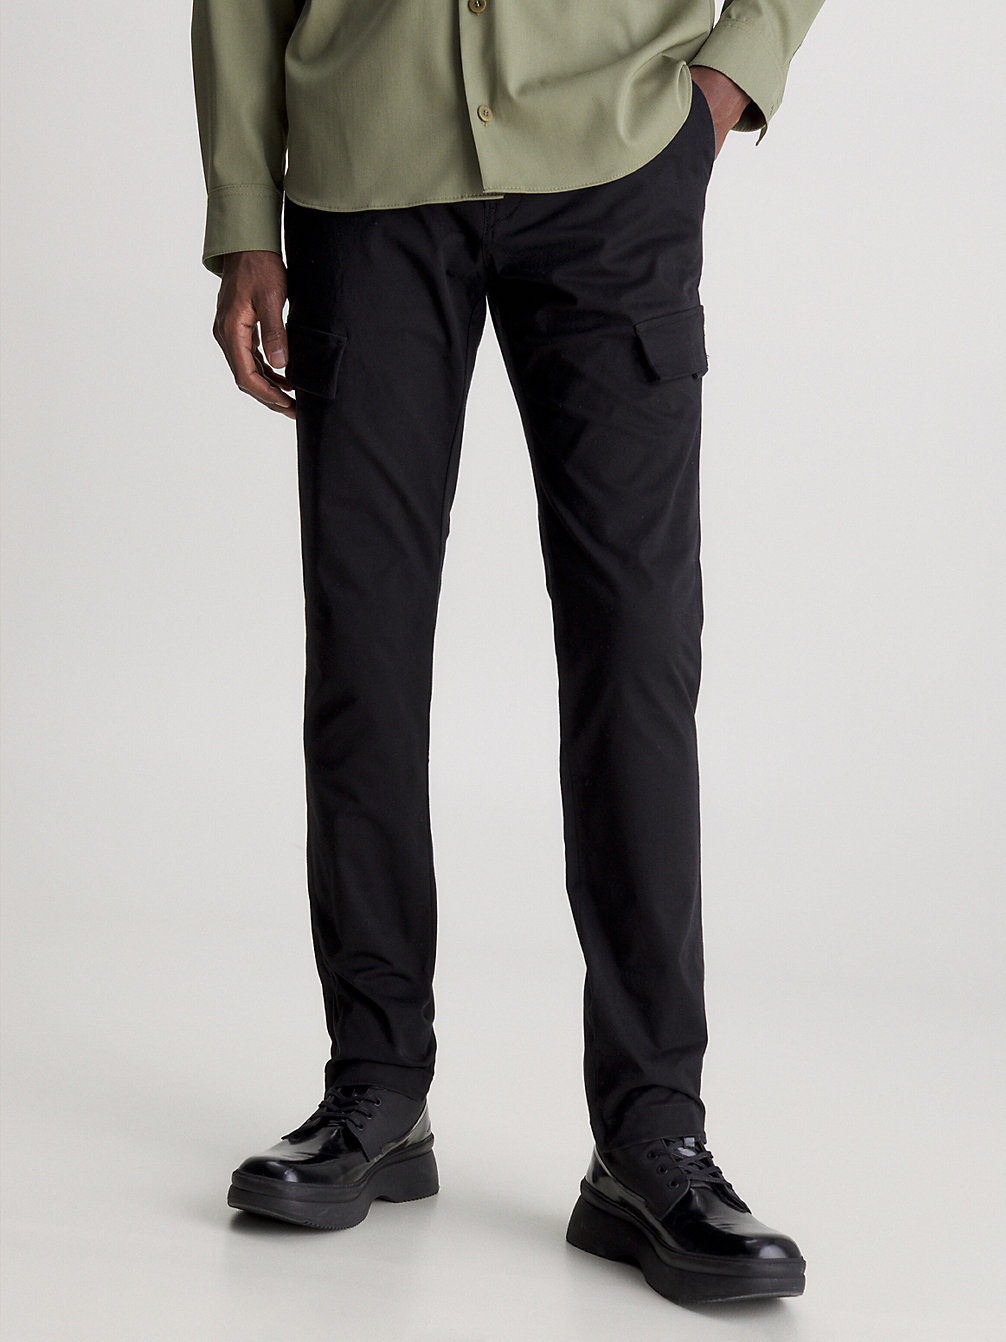 CK BLACK Pantalon Cargo Slim undefined hommes Calvin Klein